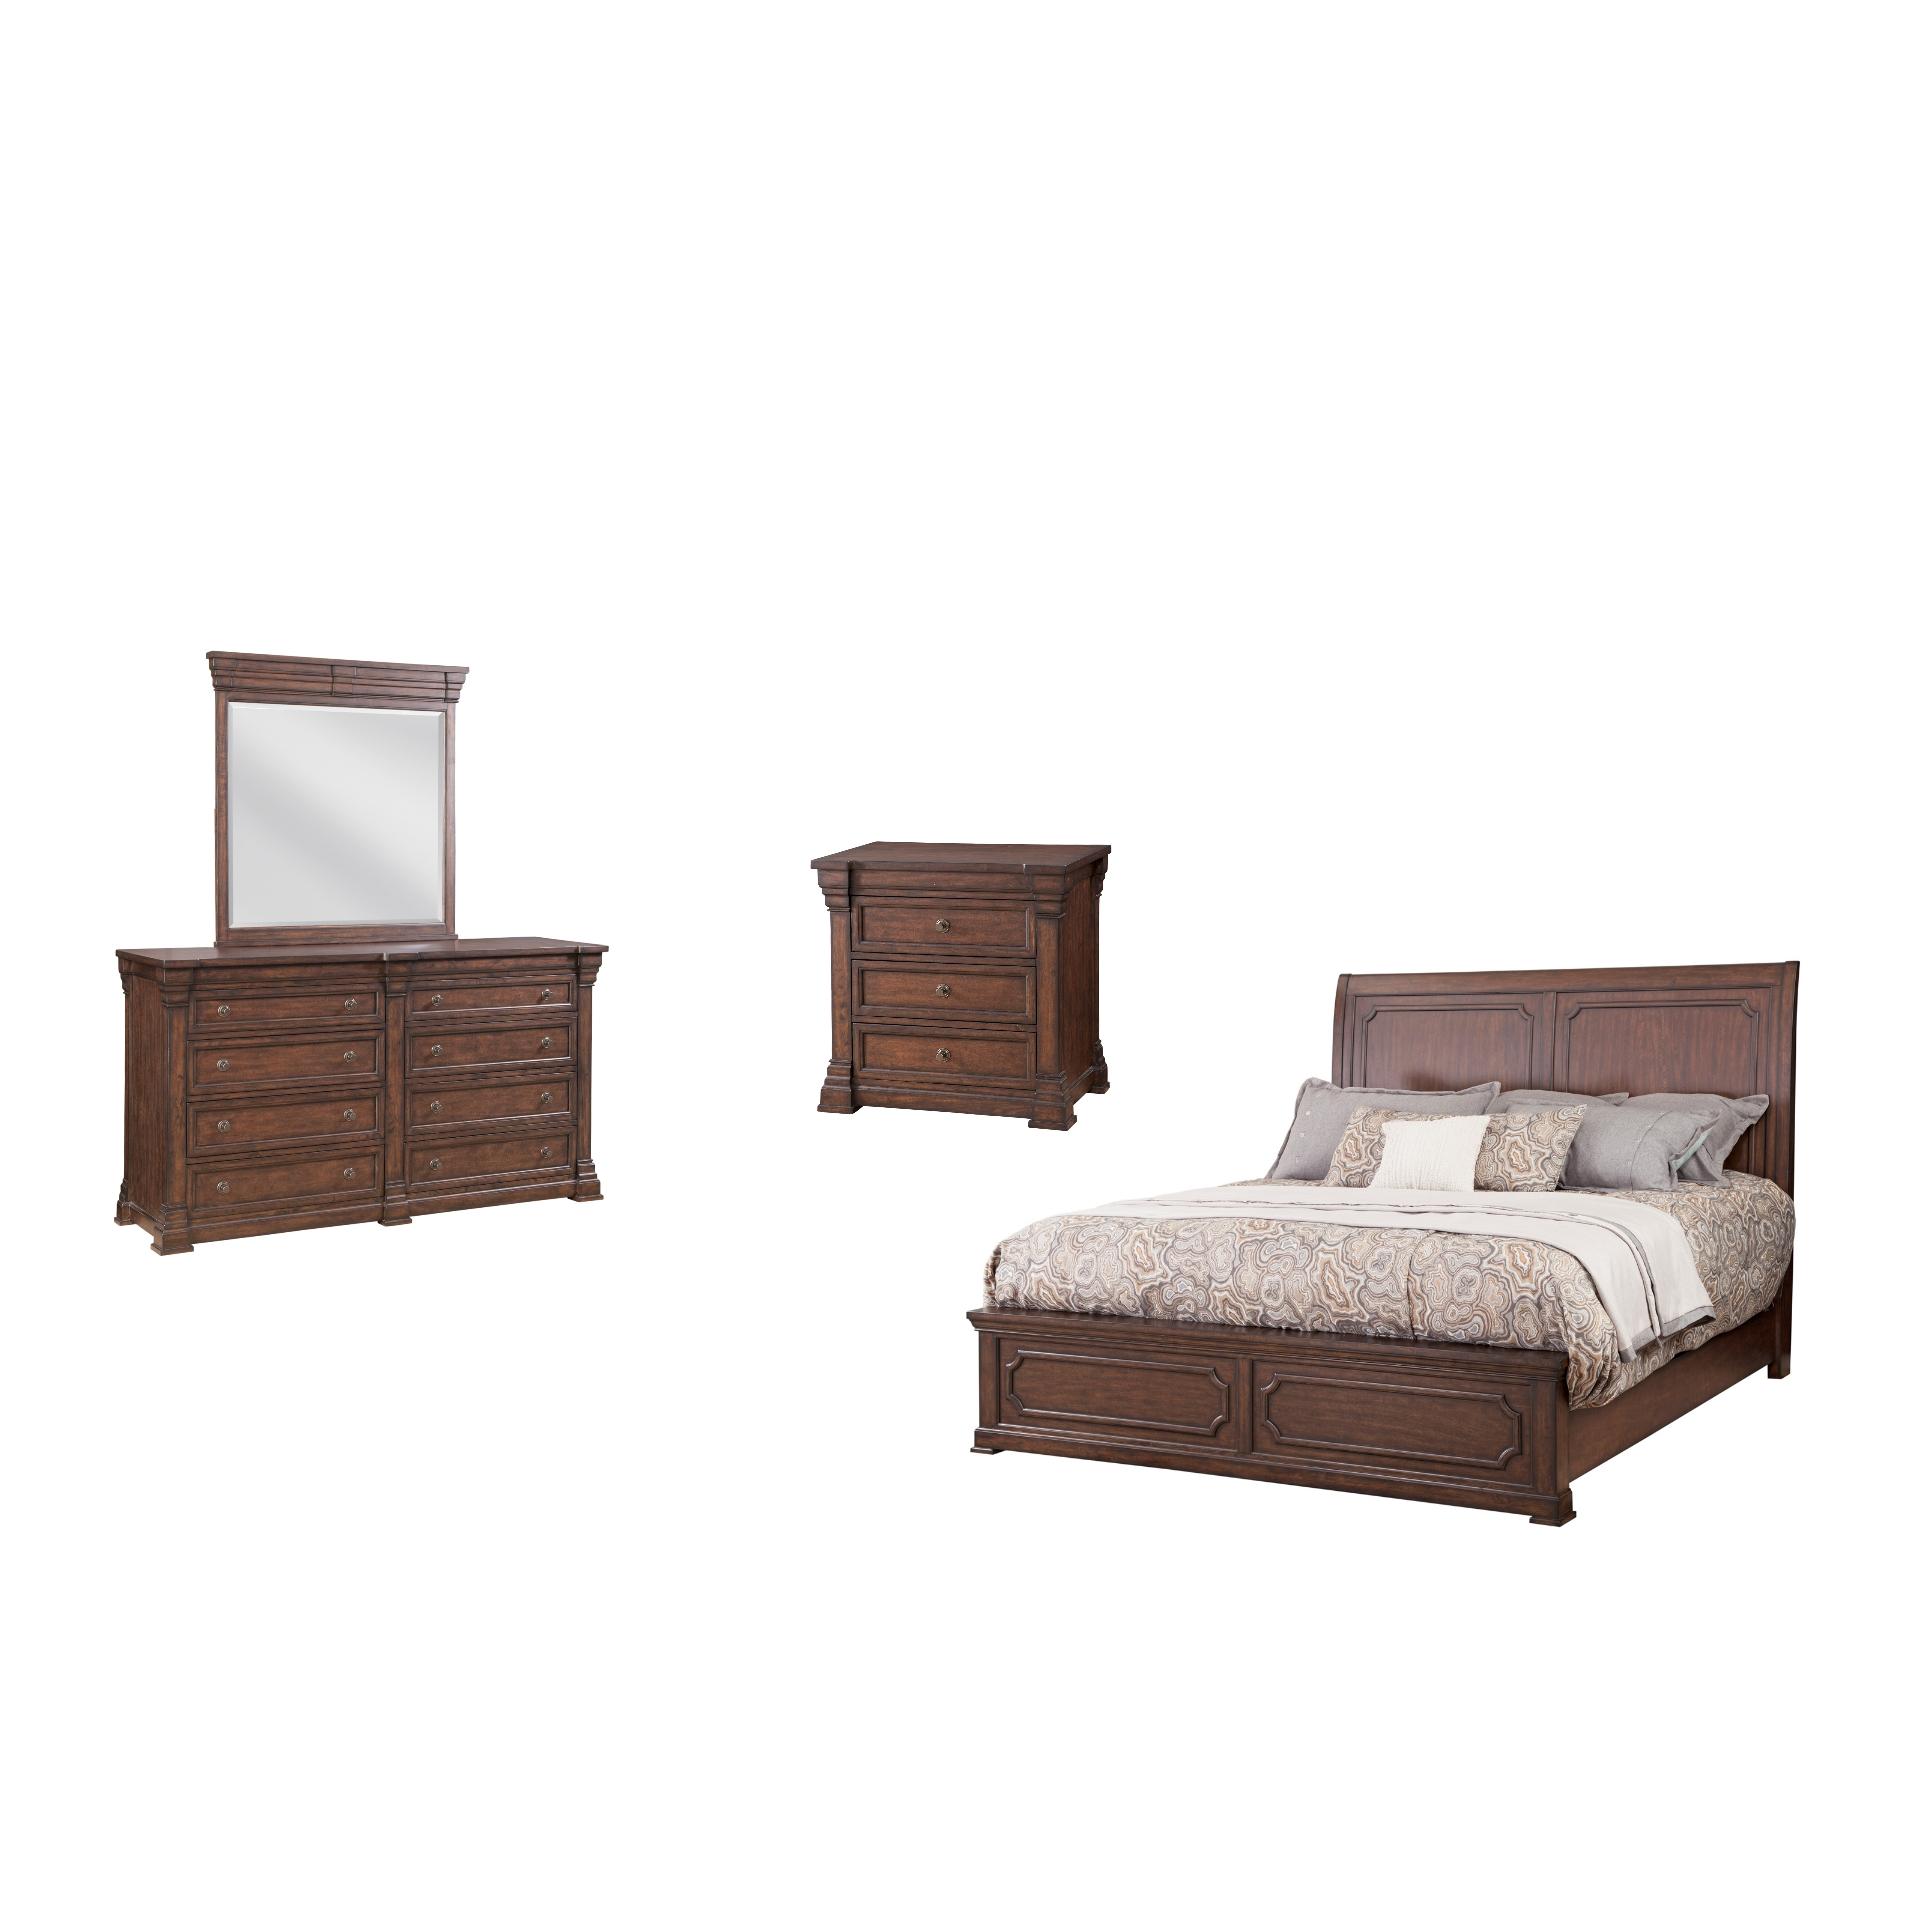 American Woodcrafters Kestrel Hills 4800-50SLPN Sleigh Bedroom Set